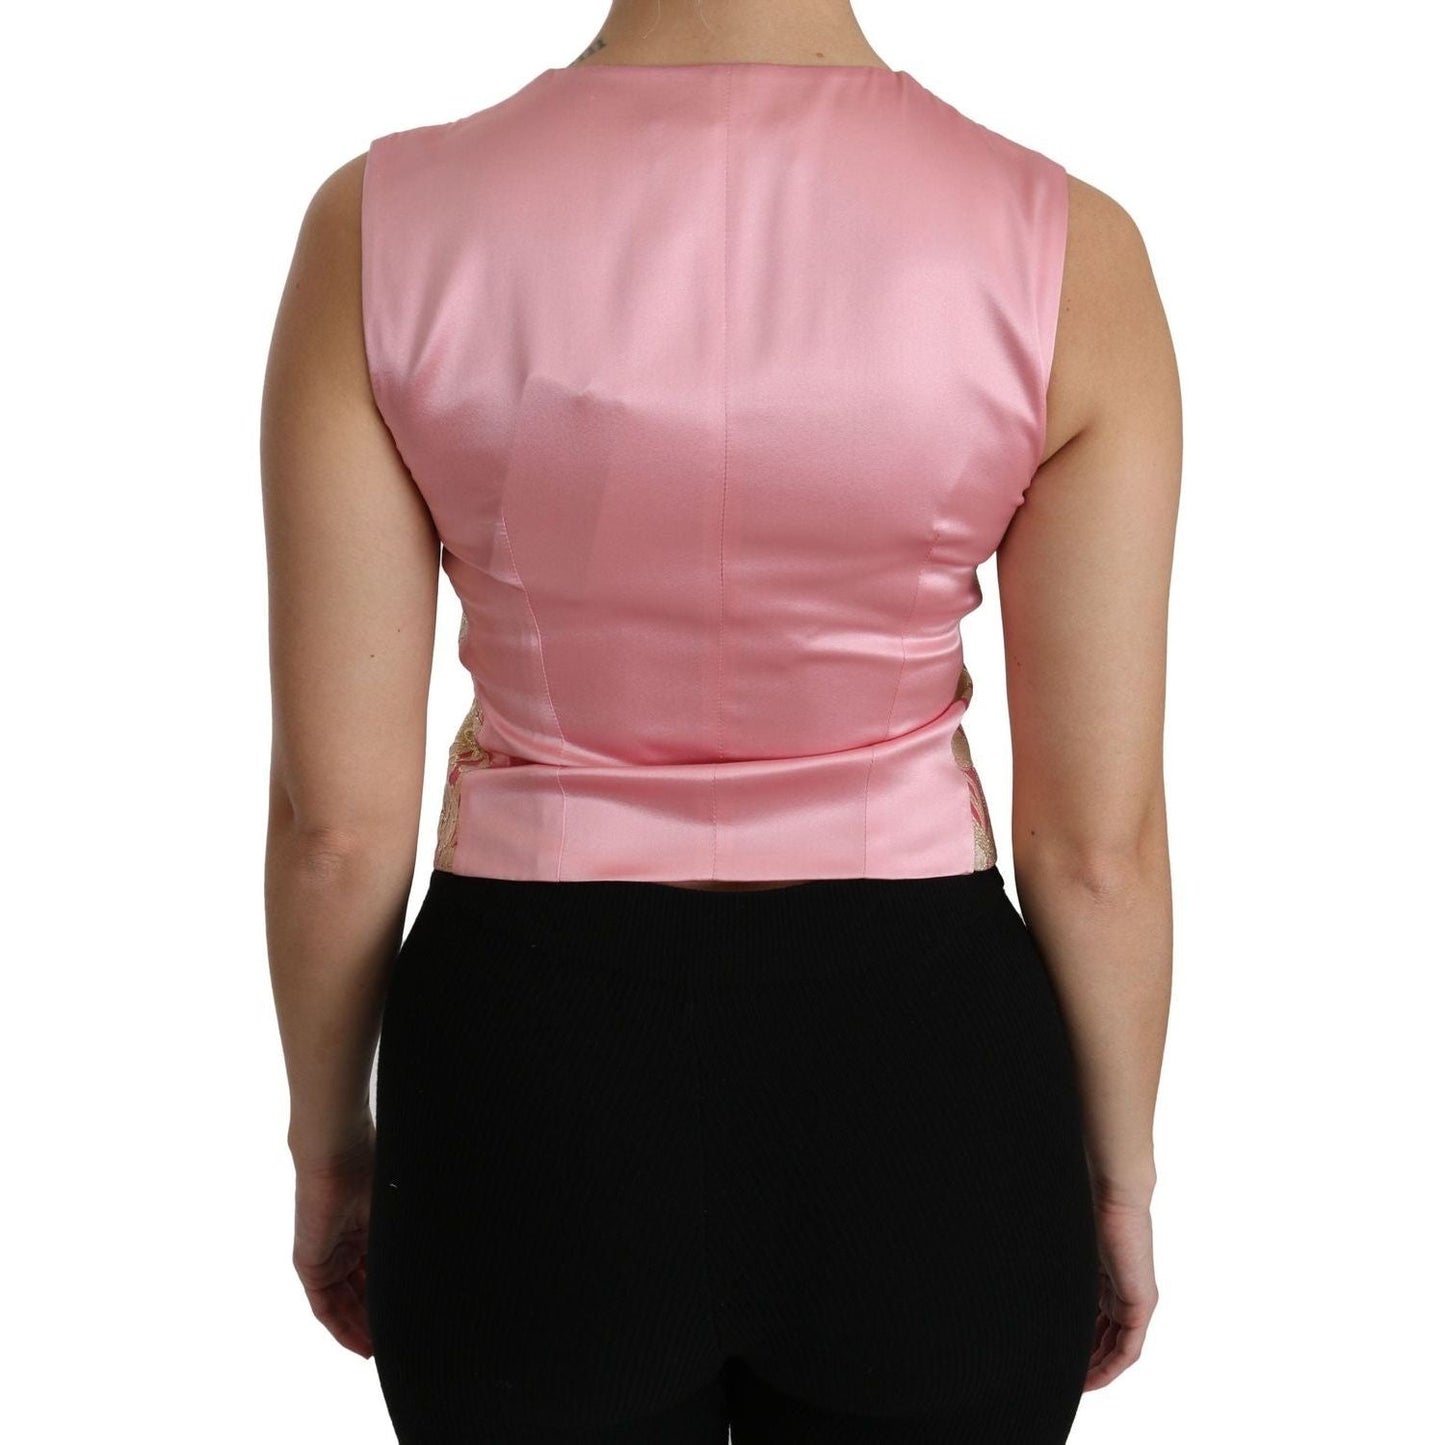 Dolce & Gabbana Elegant Silk Blend V-Neck Vest Top pink-gold-brocade-waistcoat-vest-blouse-top